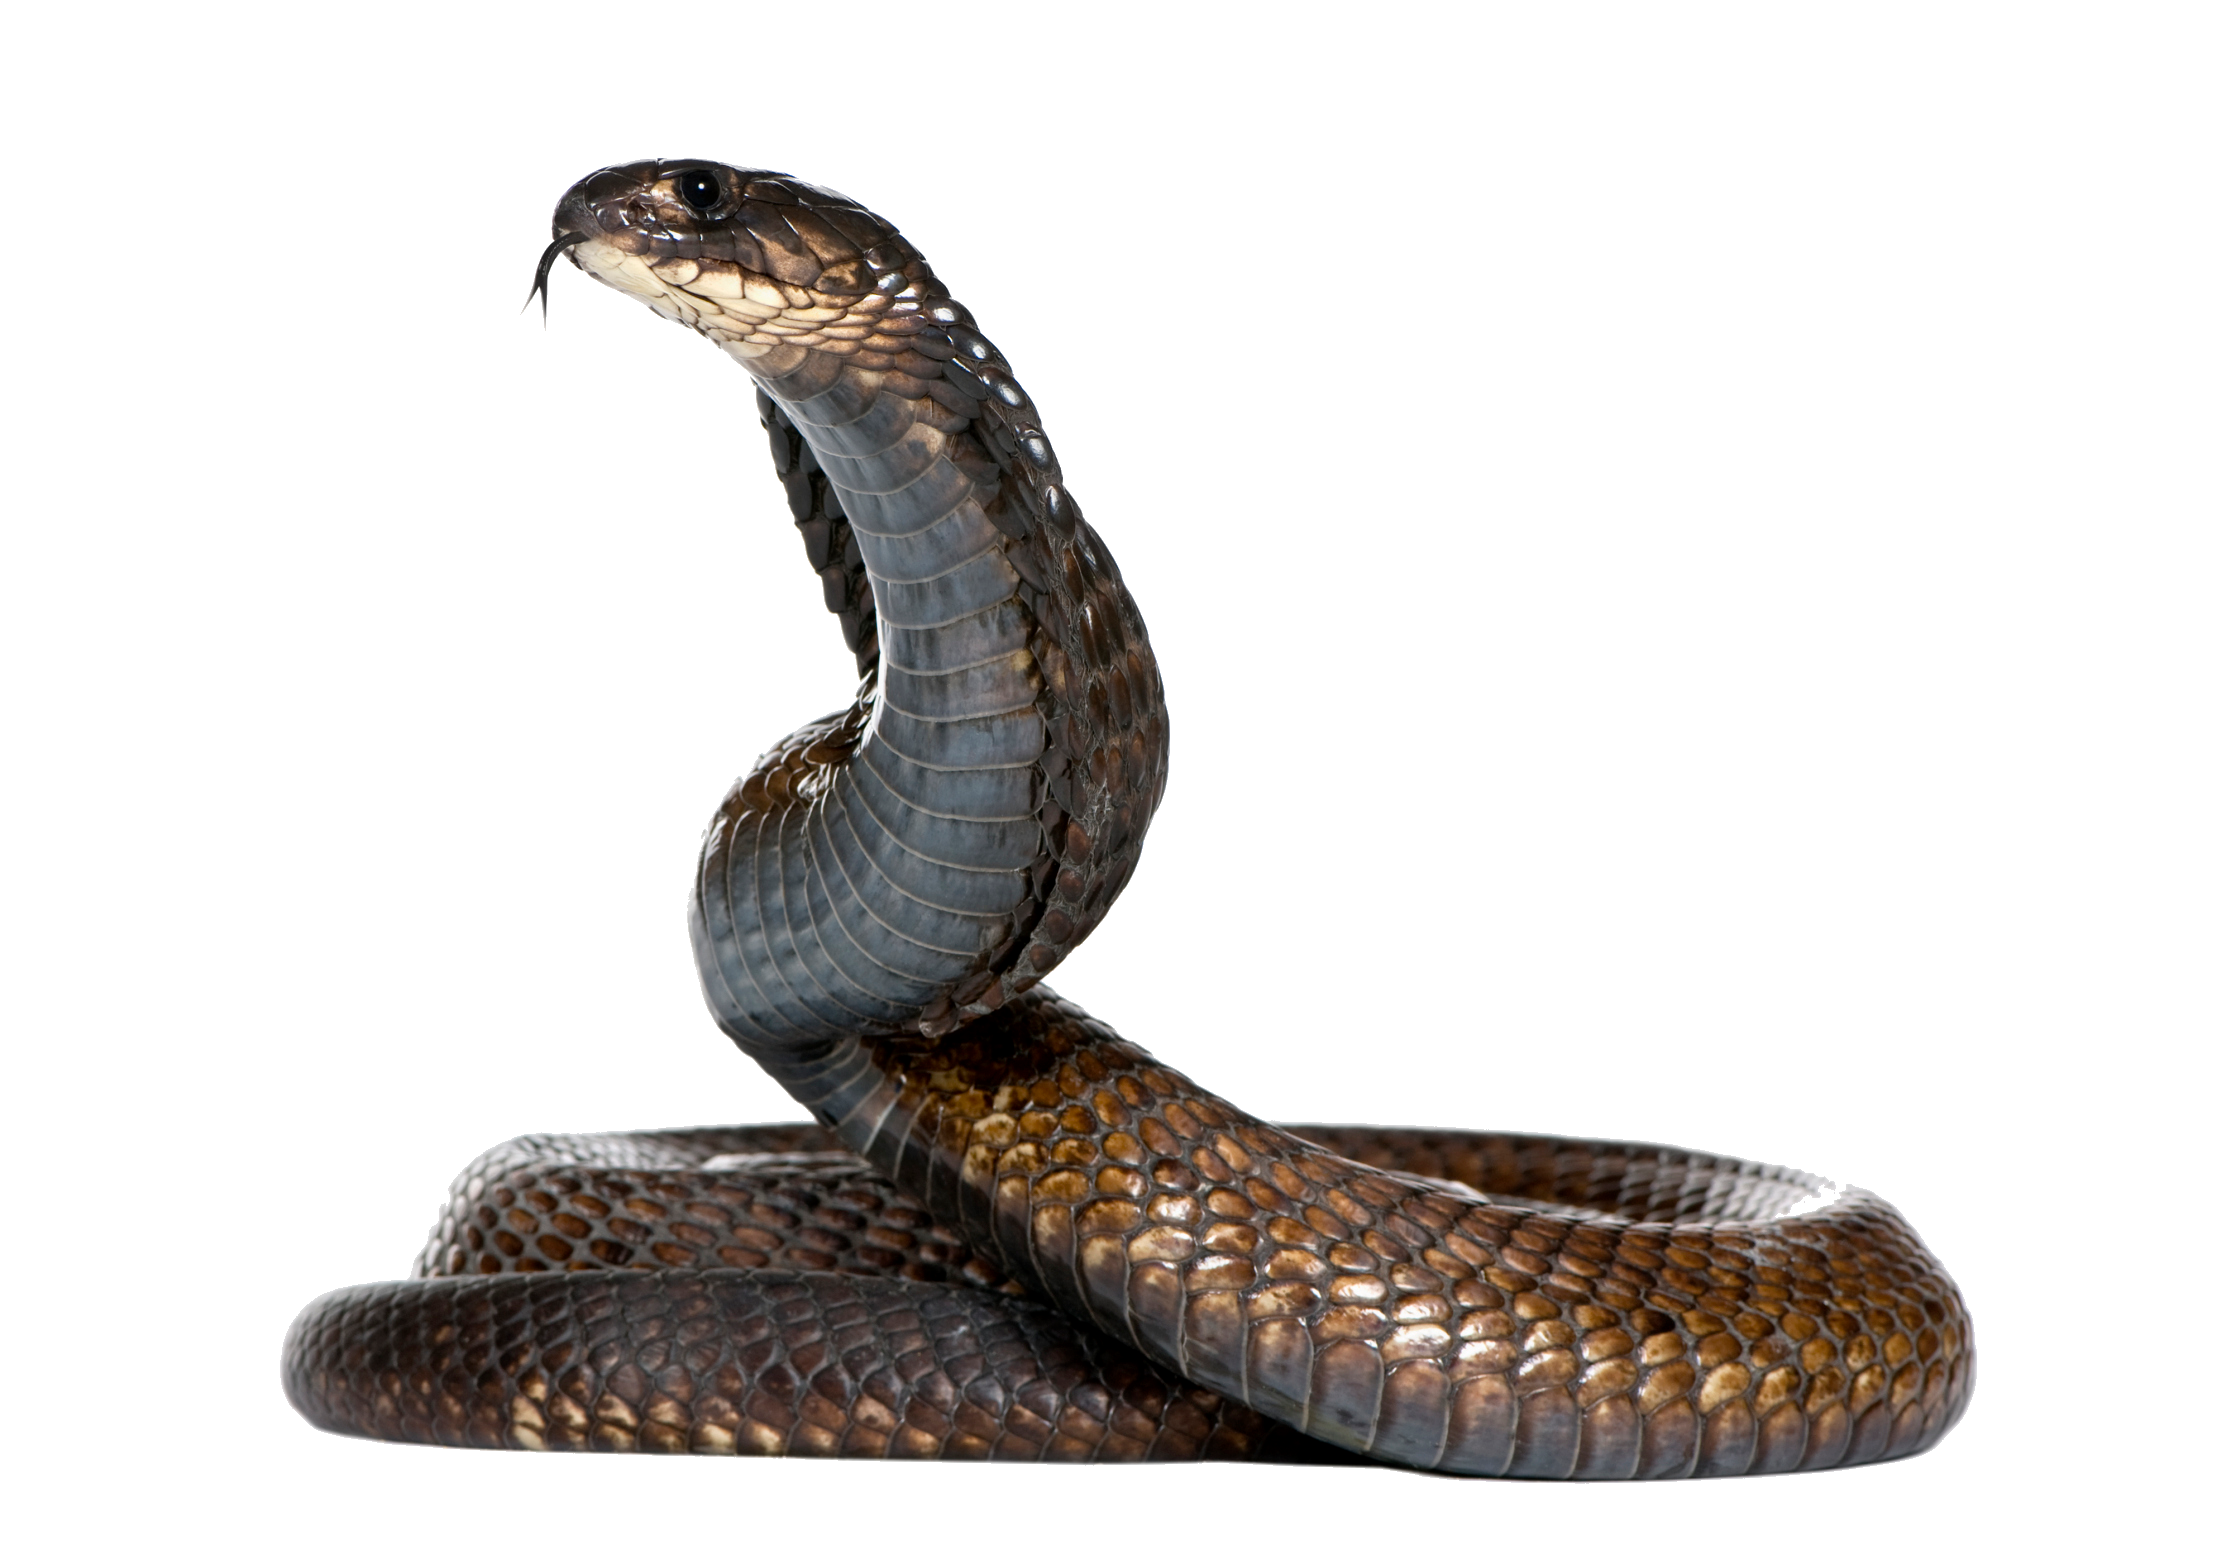 Cobra Head Snake Transparent 